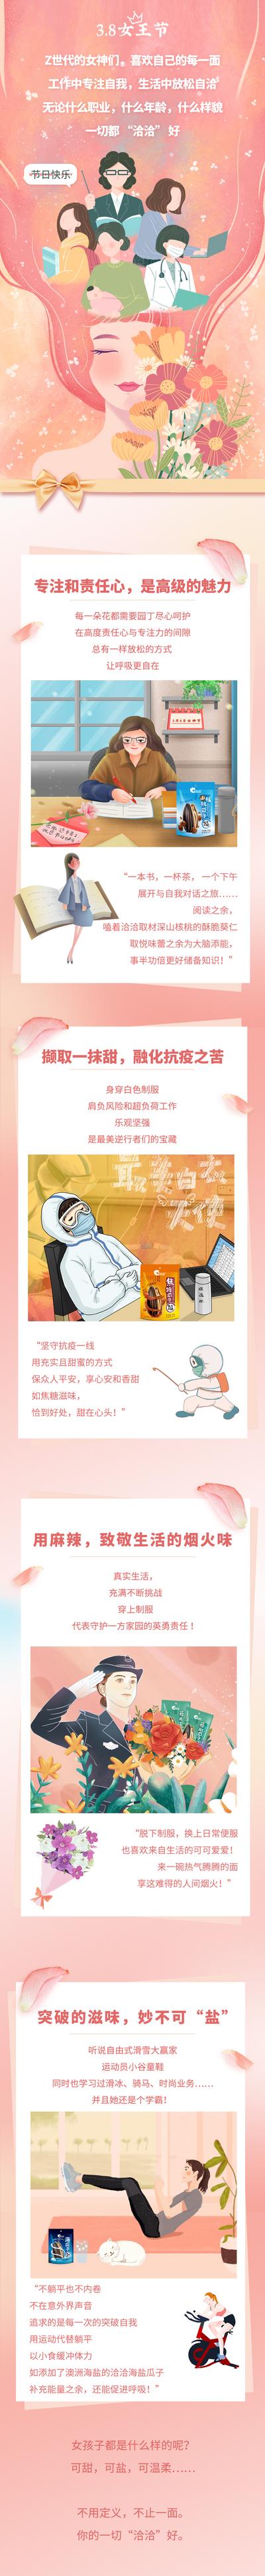 南门网 海报 长图 公历节日 38 妇女节 女神节 插画 缤纷